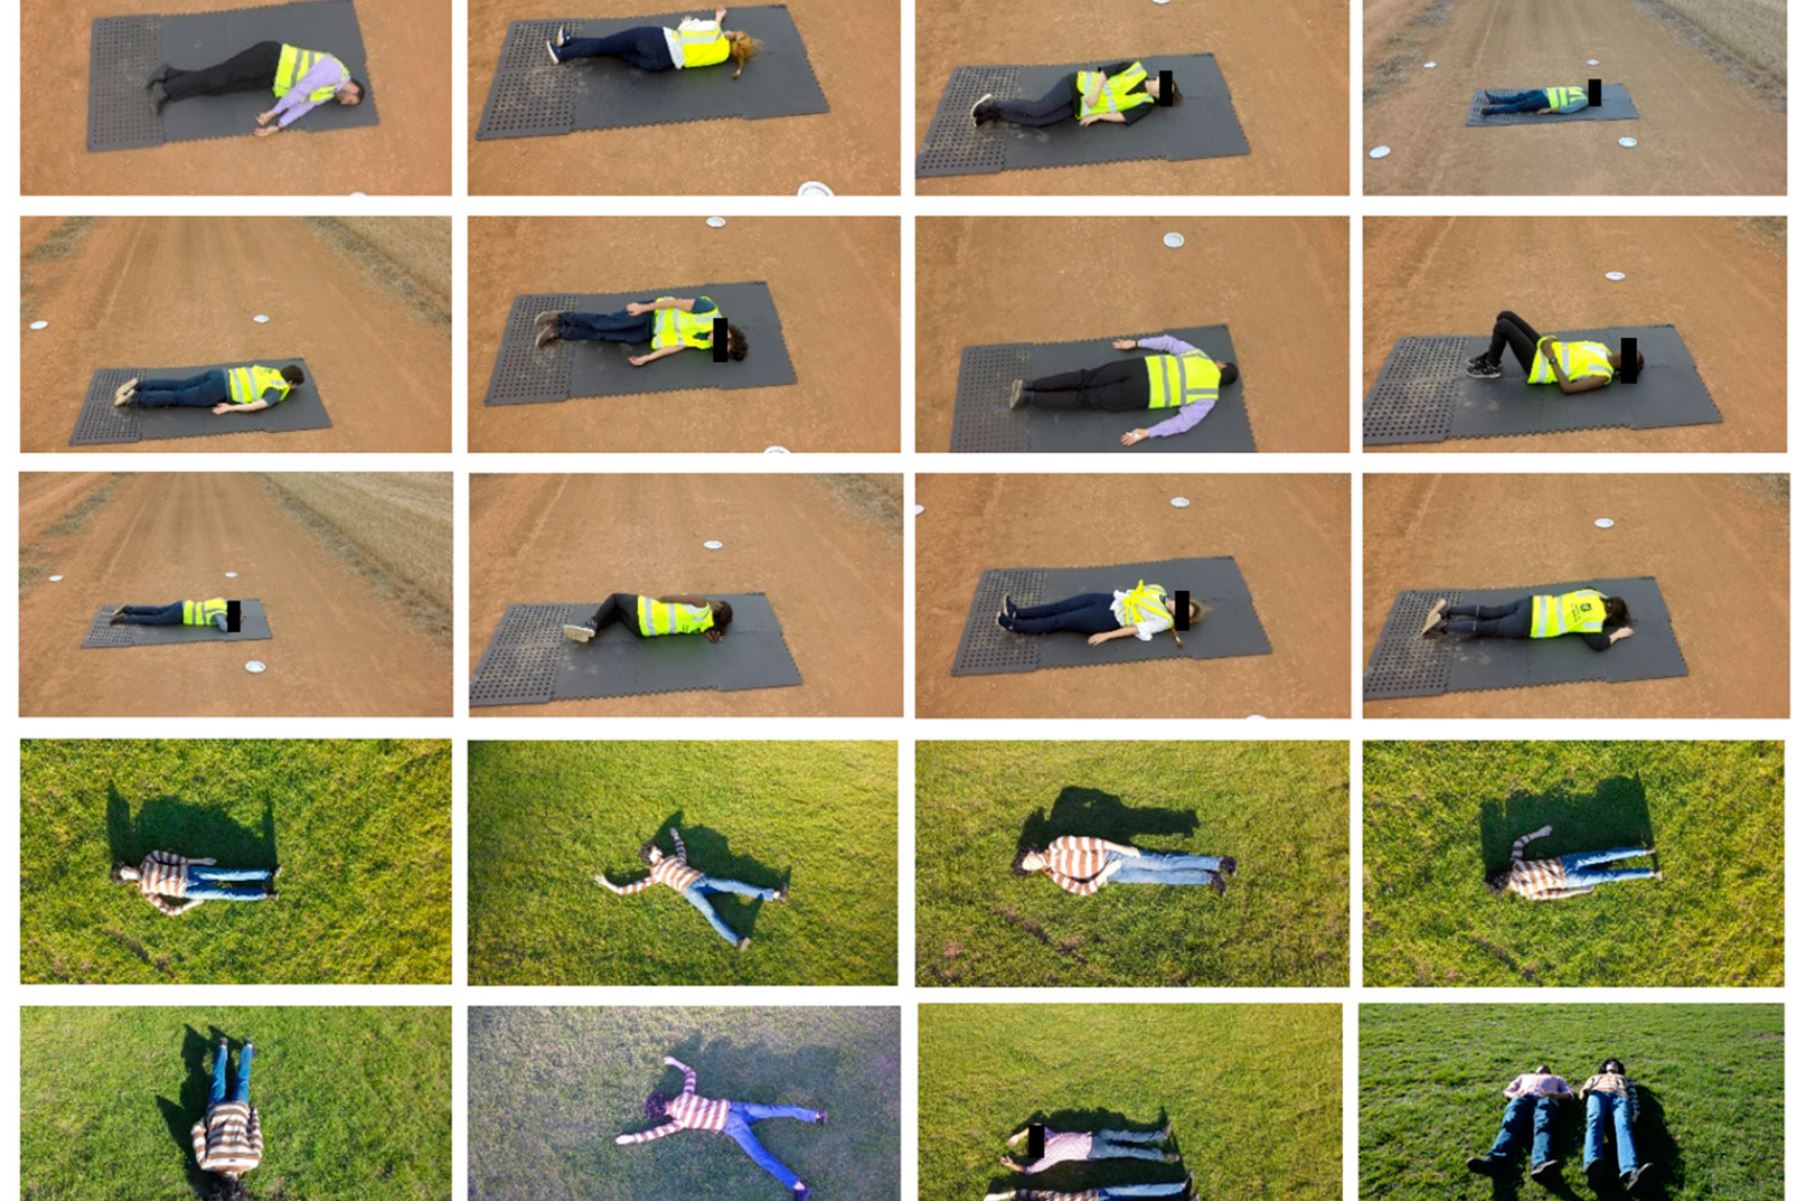 El algoritmo que diferencia personas vivas de muertas desde imágenes captadas por un dron fue probado con personas reales y un maniquí. Imagen: Remote Sensing